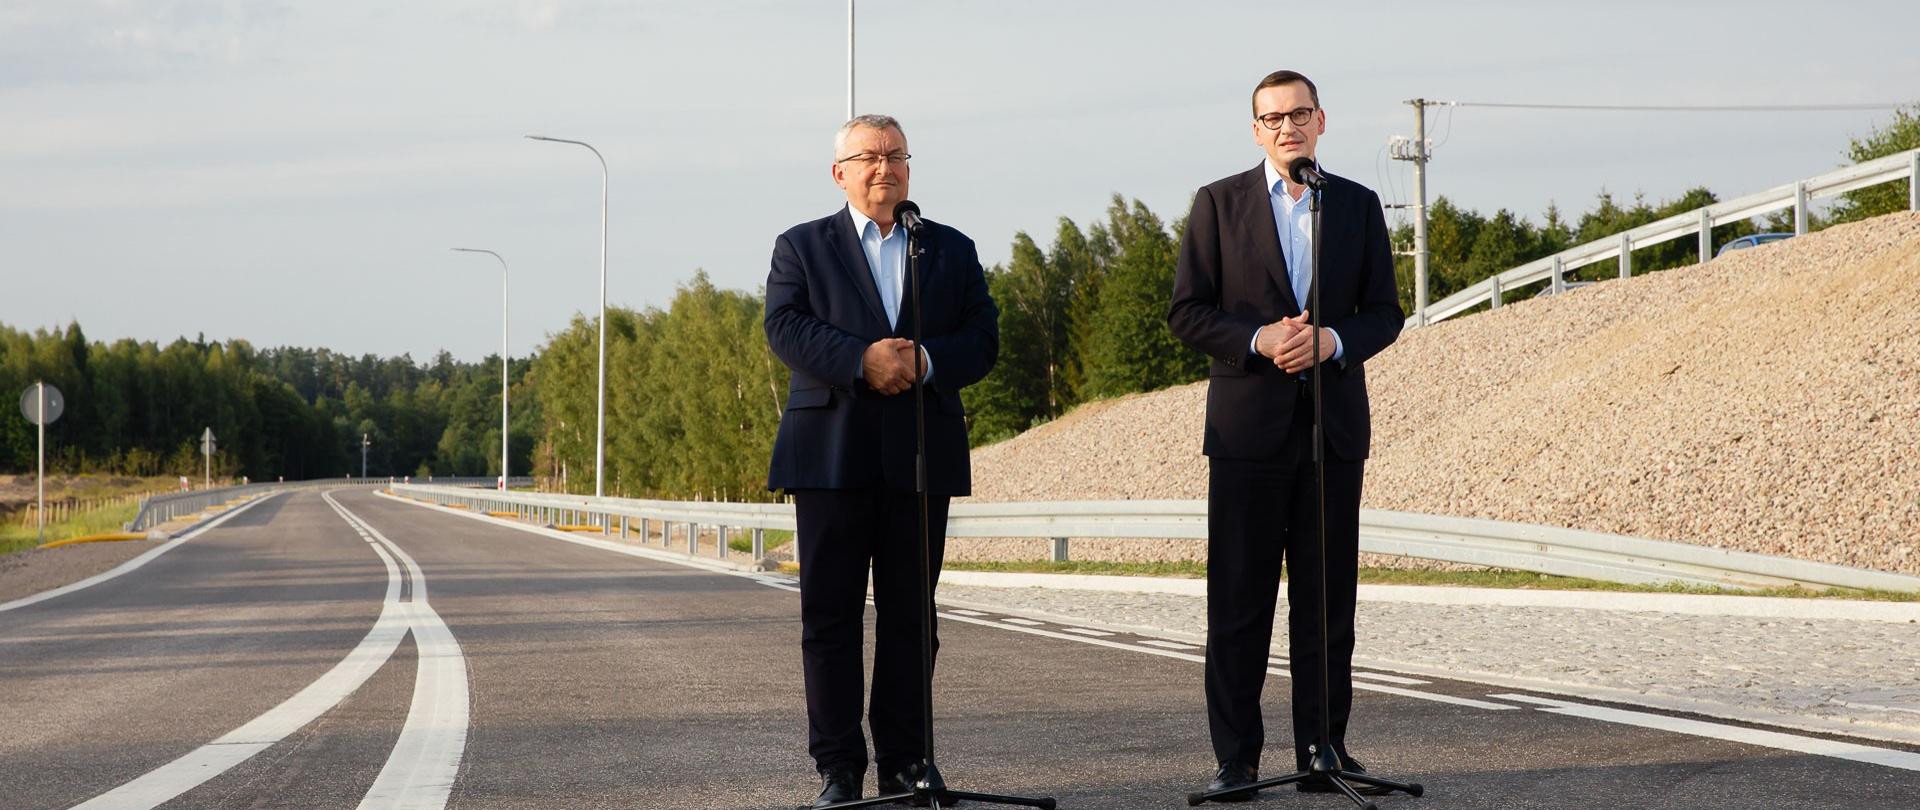 Premier oraz minister Andrzej Adamczyk stoją podczas konferencji prasowej na tle obwodnicy.